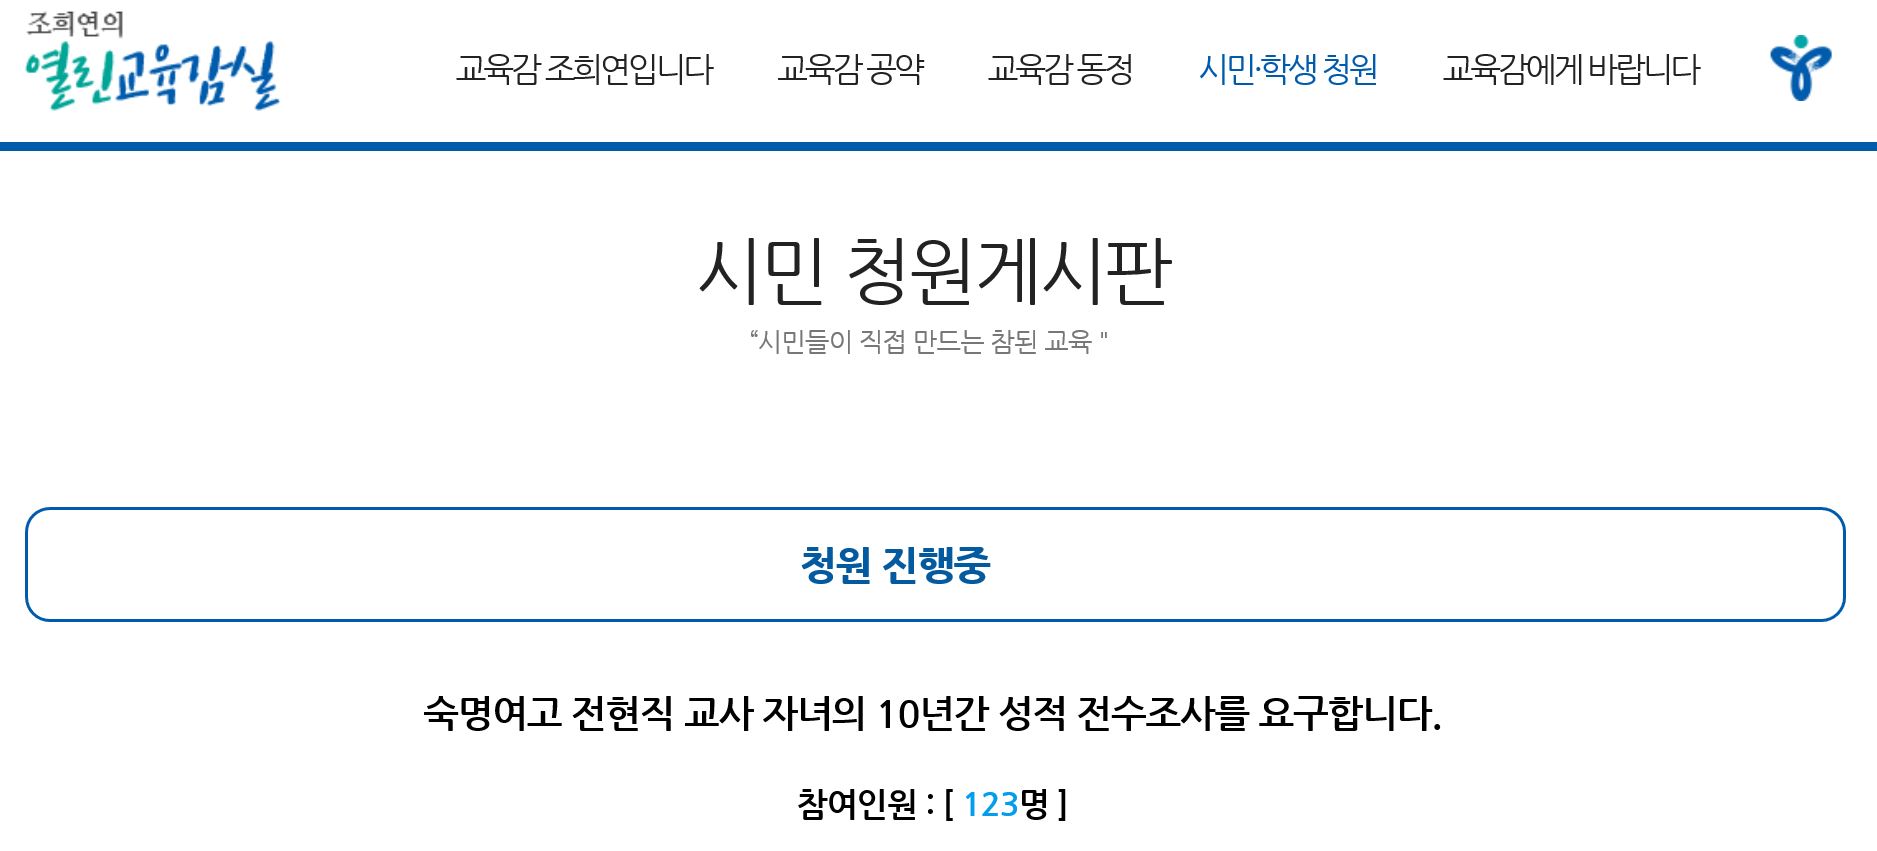 서울 교육청 게시판에 오른 숙명여고 청원글